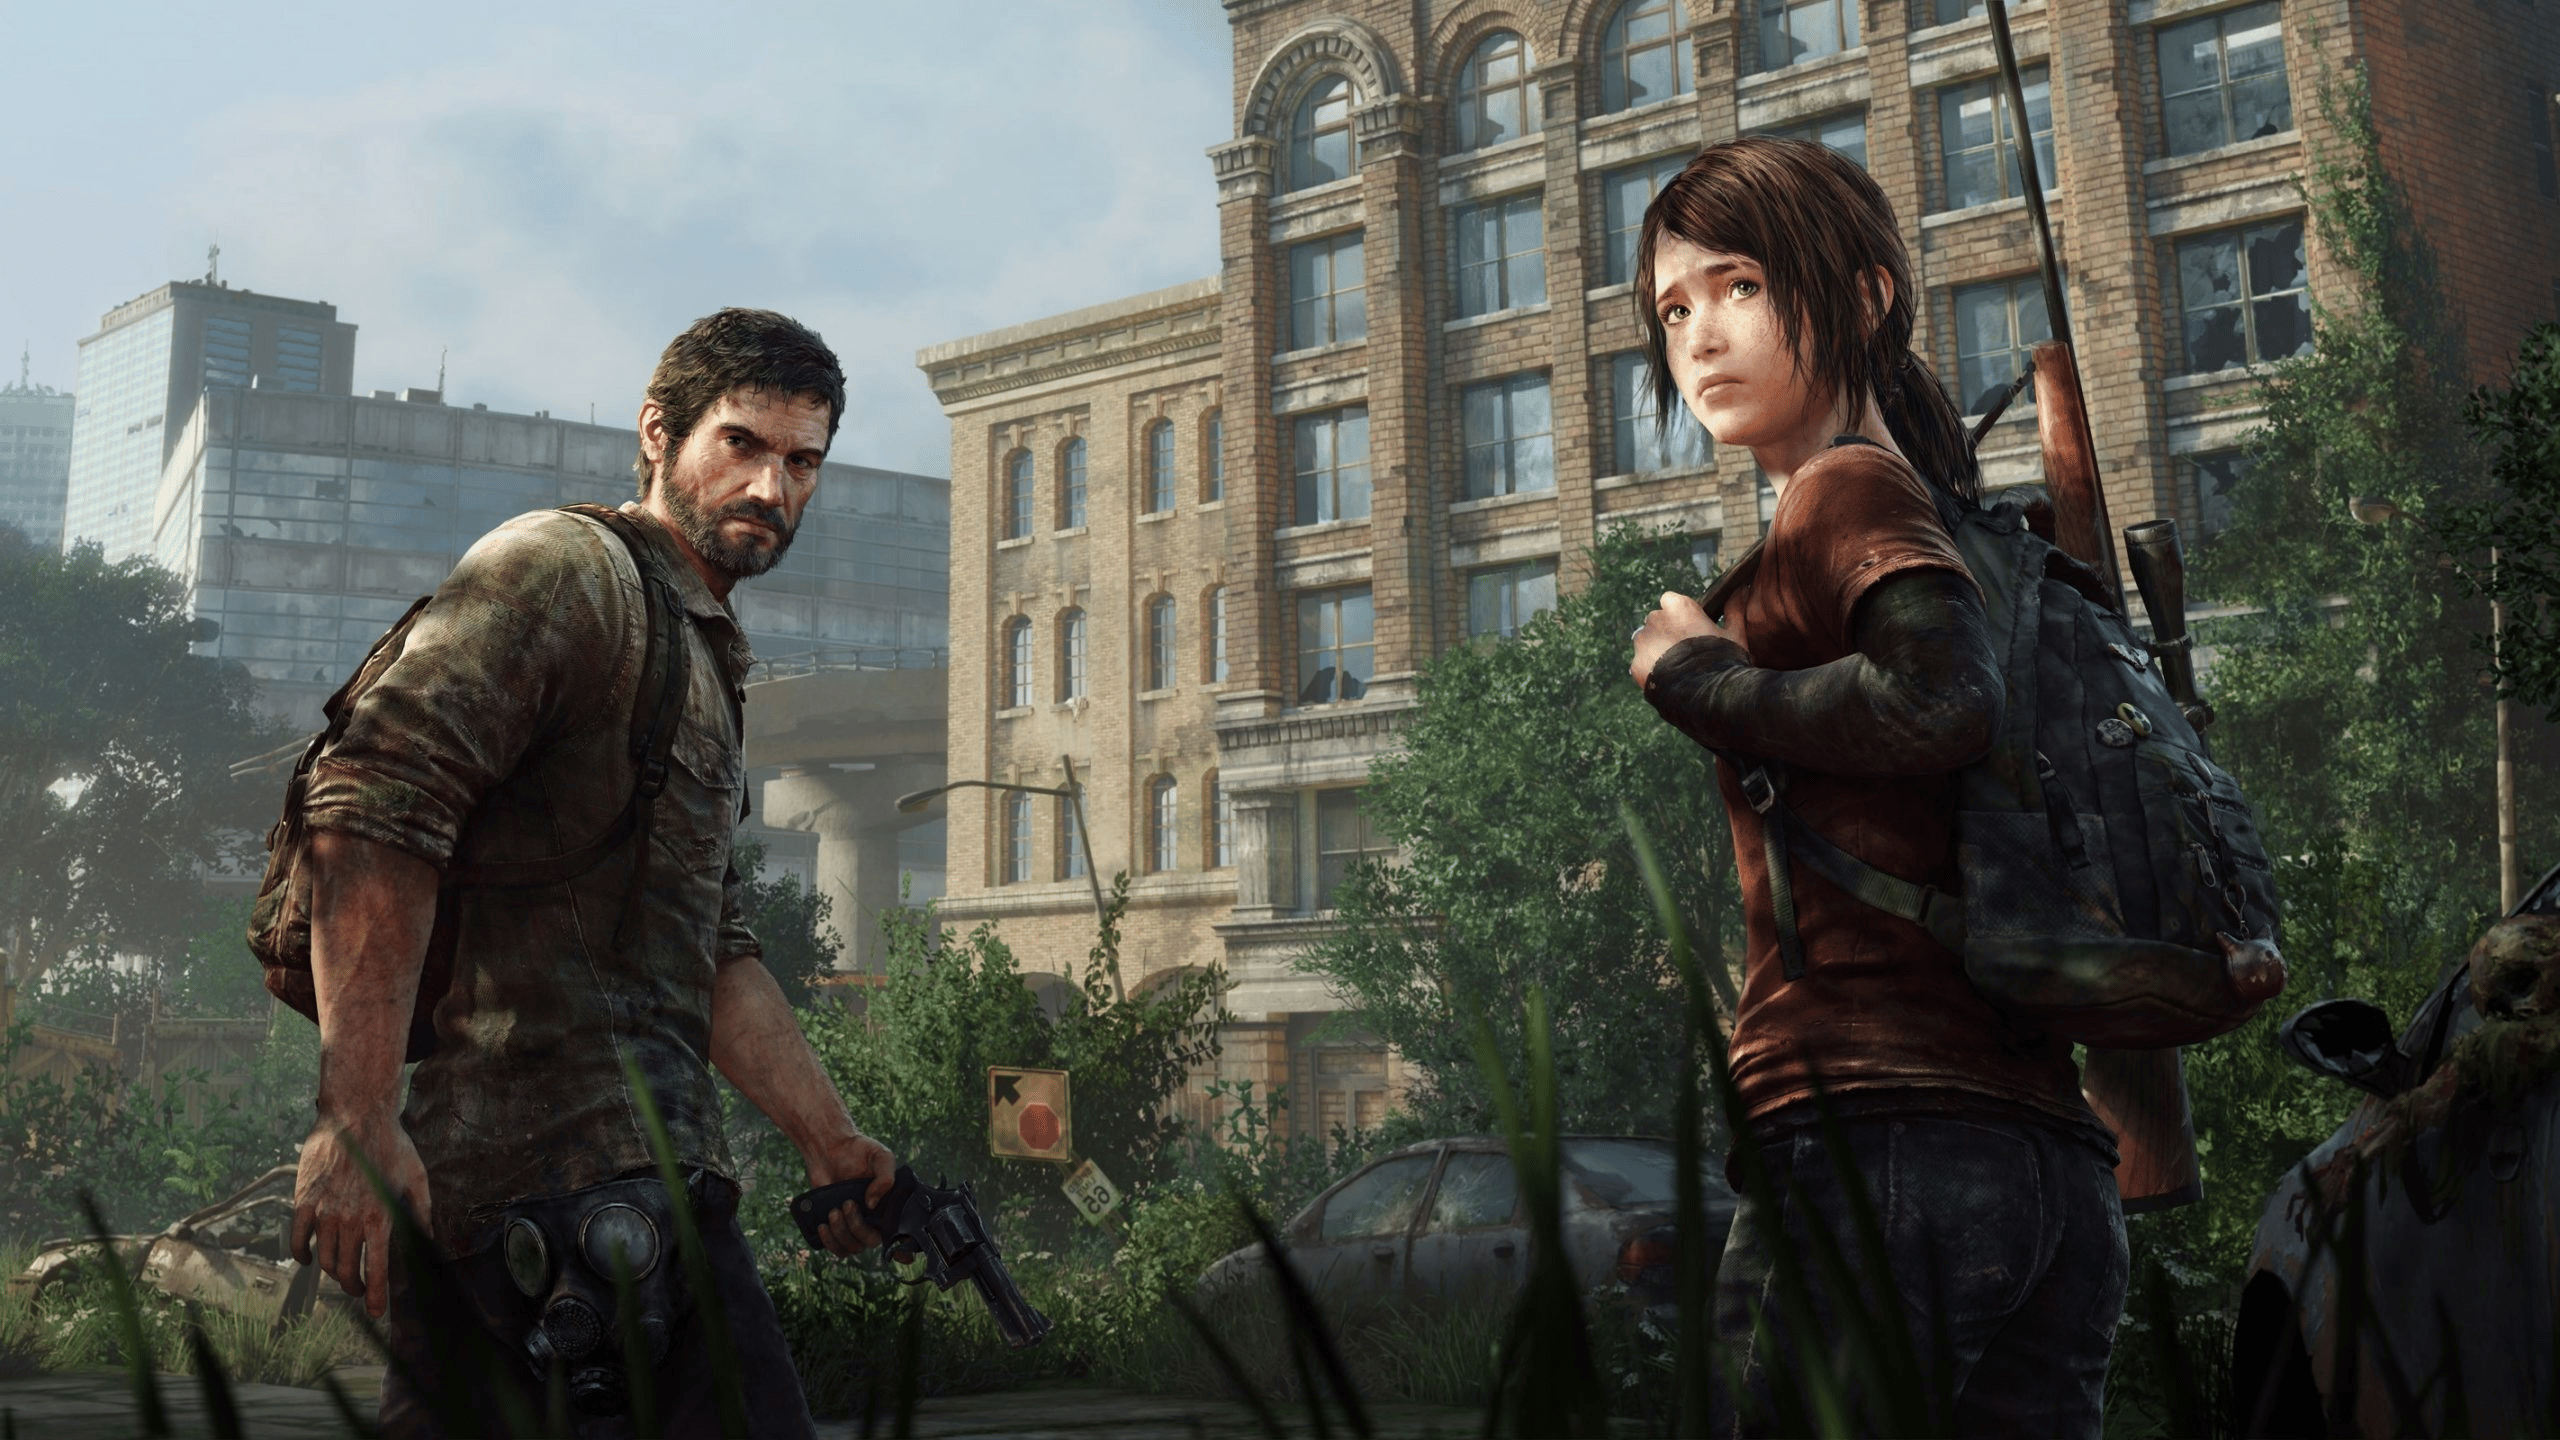 изображение 2022 07 26 170916501 - Джоэл и Элли из The Last of Us могут попасть в фортнайт